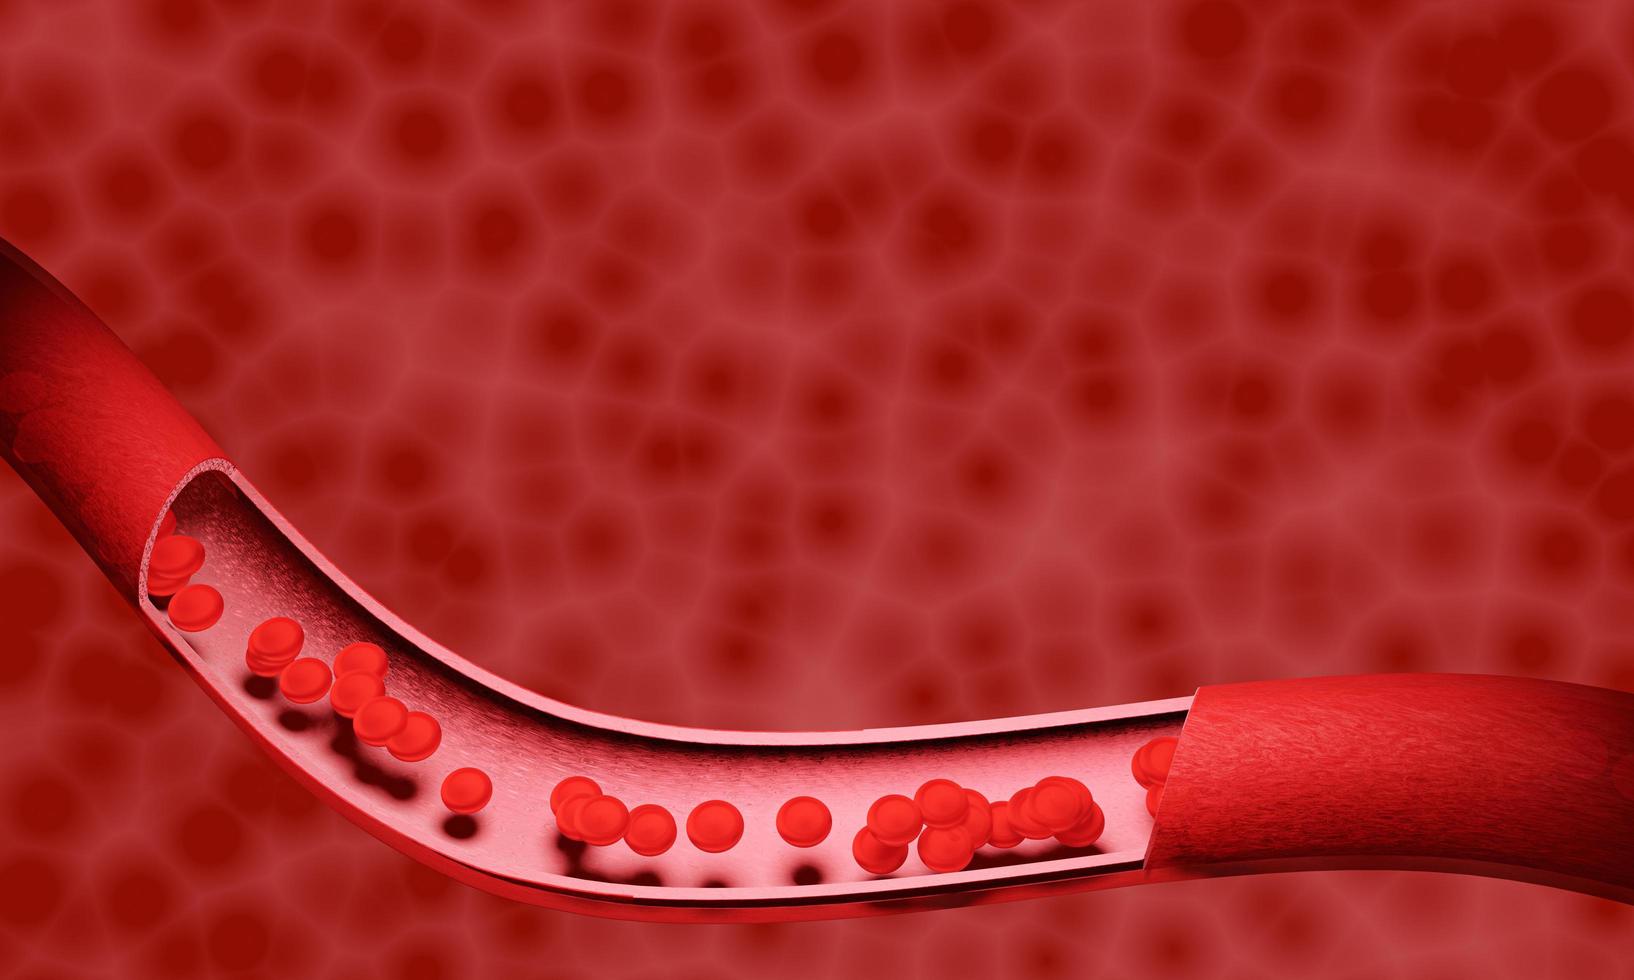 globules rouges dans une artère ou un vaisseau sanguin, écoulement à l'intérieur du corps, soins médicaux de santé humaine. rendu 3d. photo